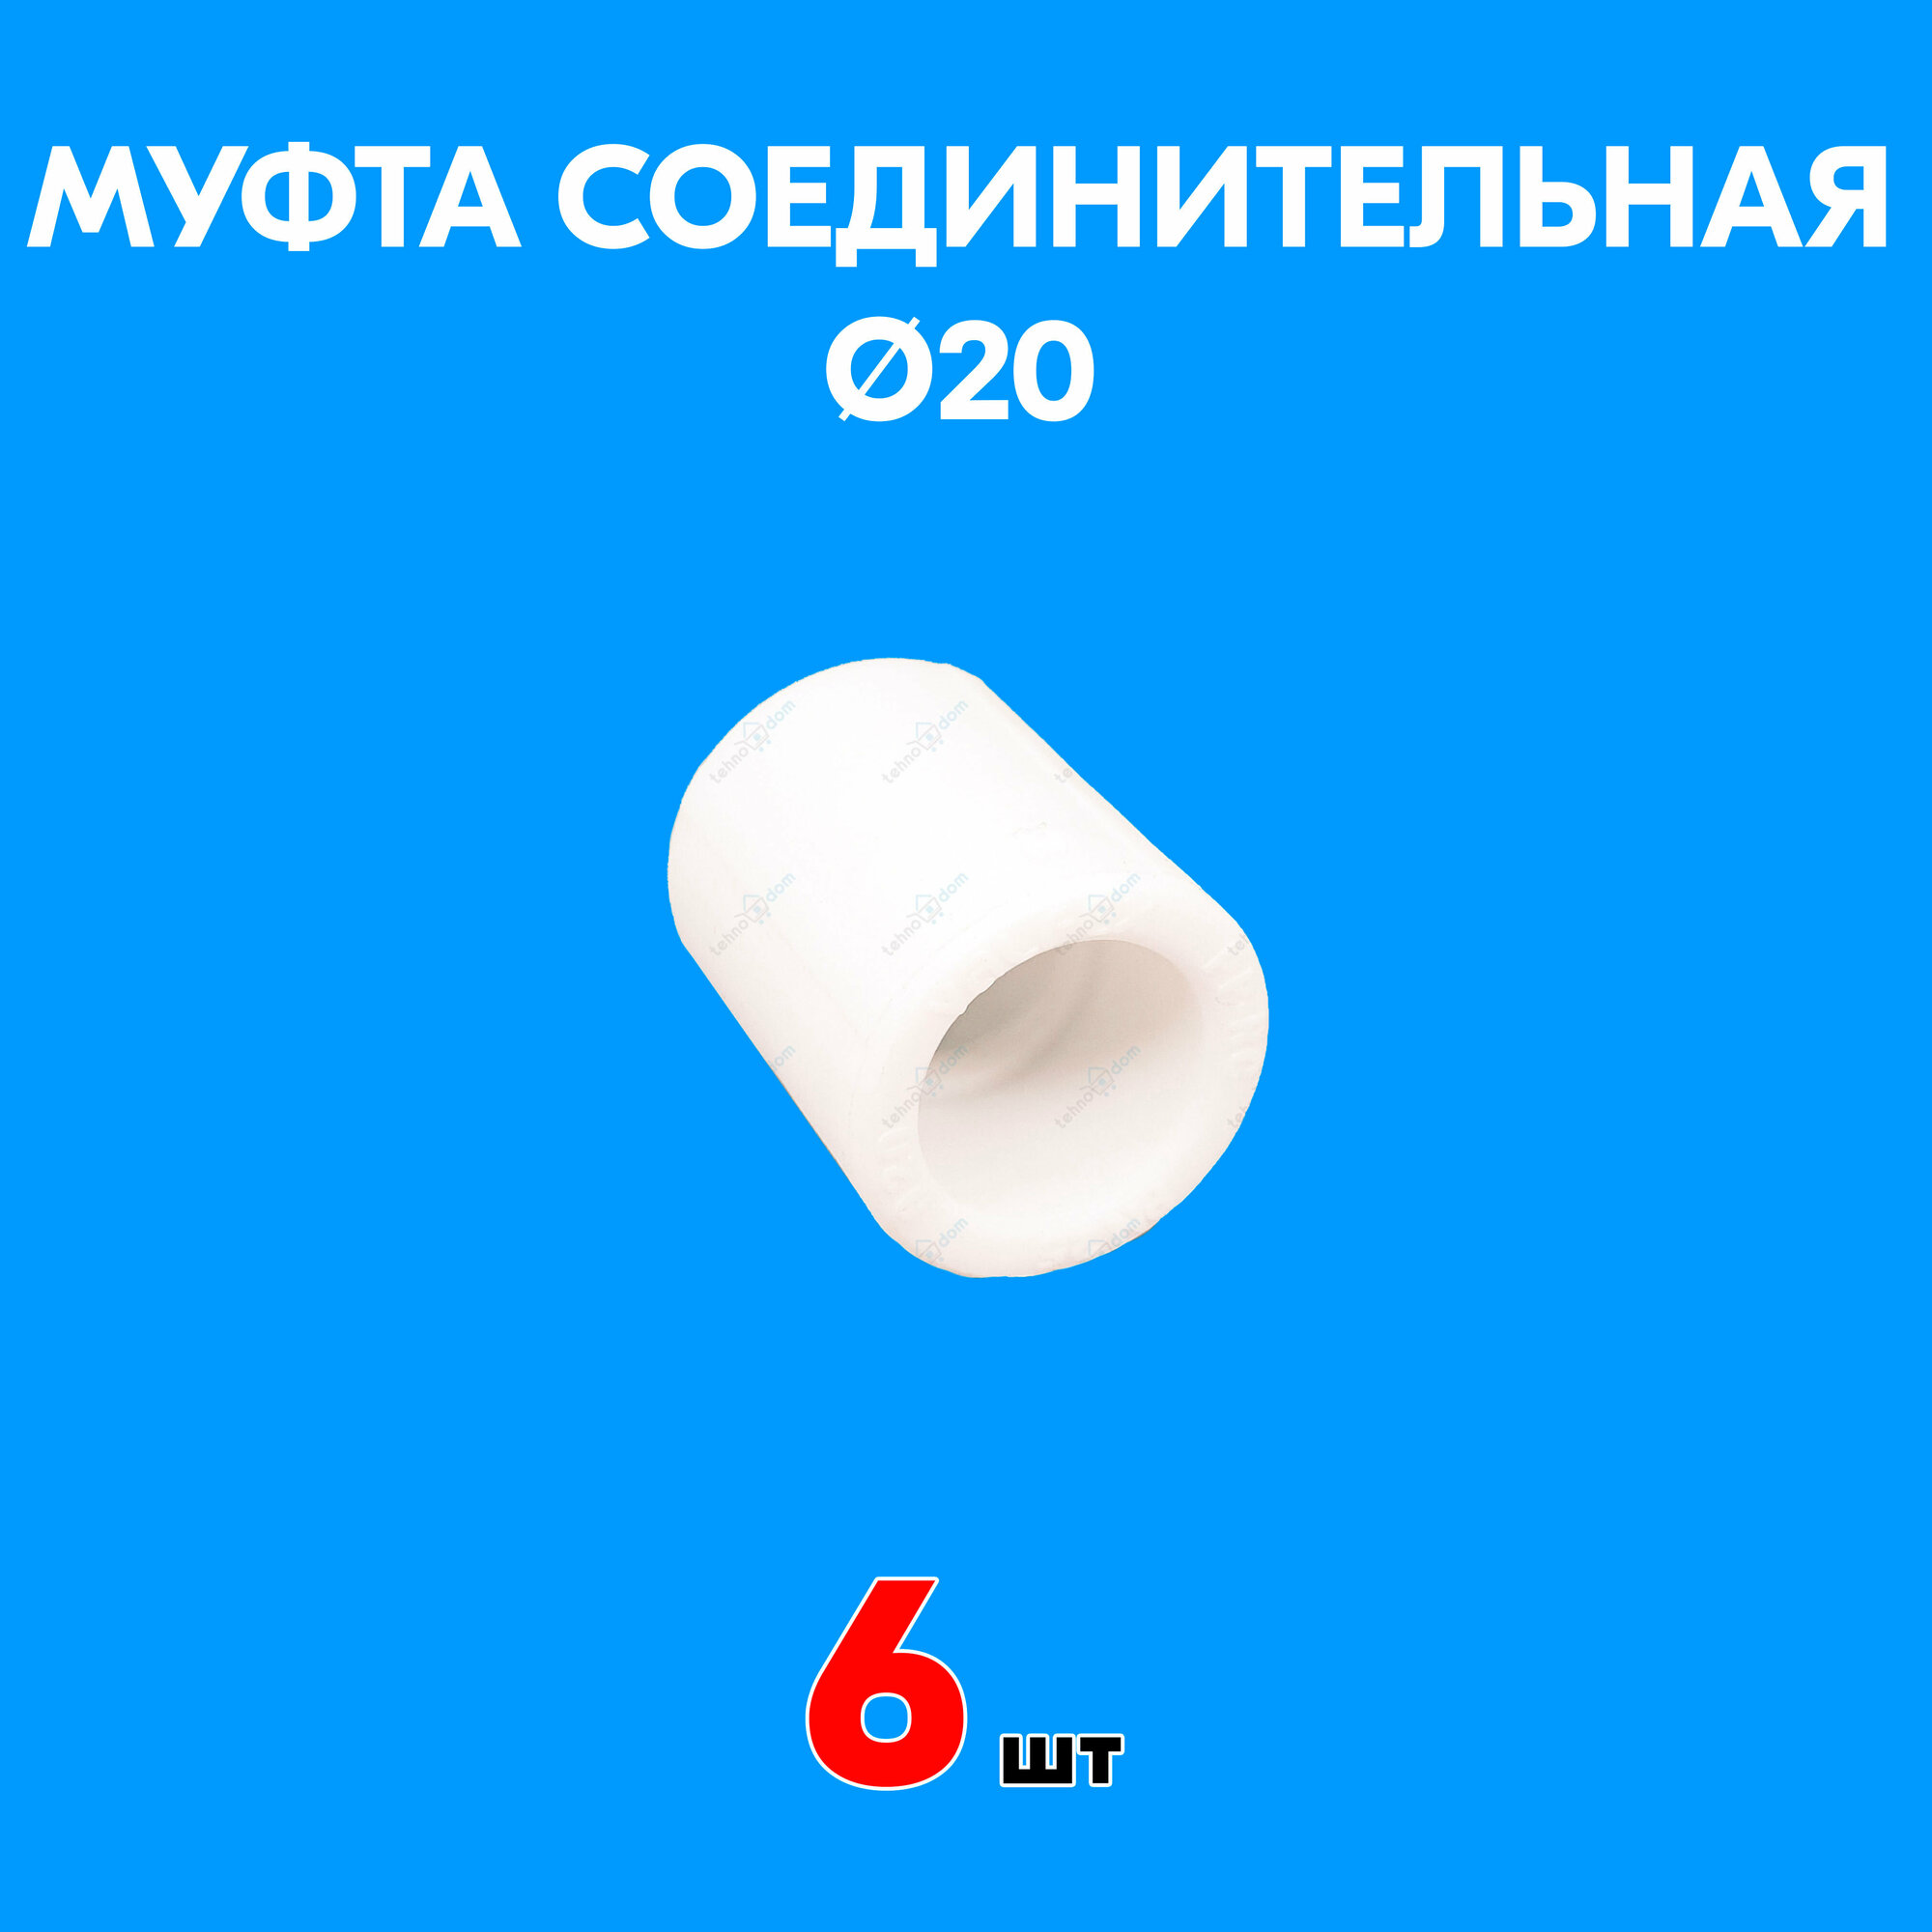 Муфта полипропиленовая соединительная 20 (6 шт)